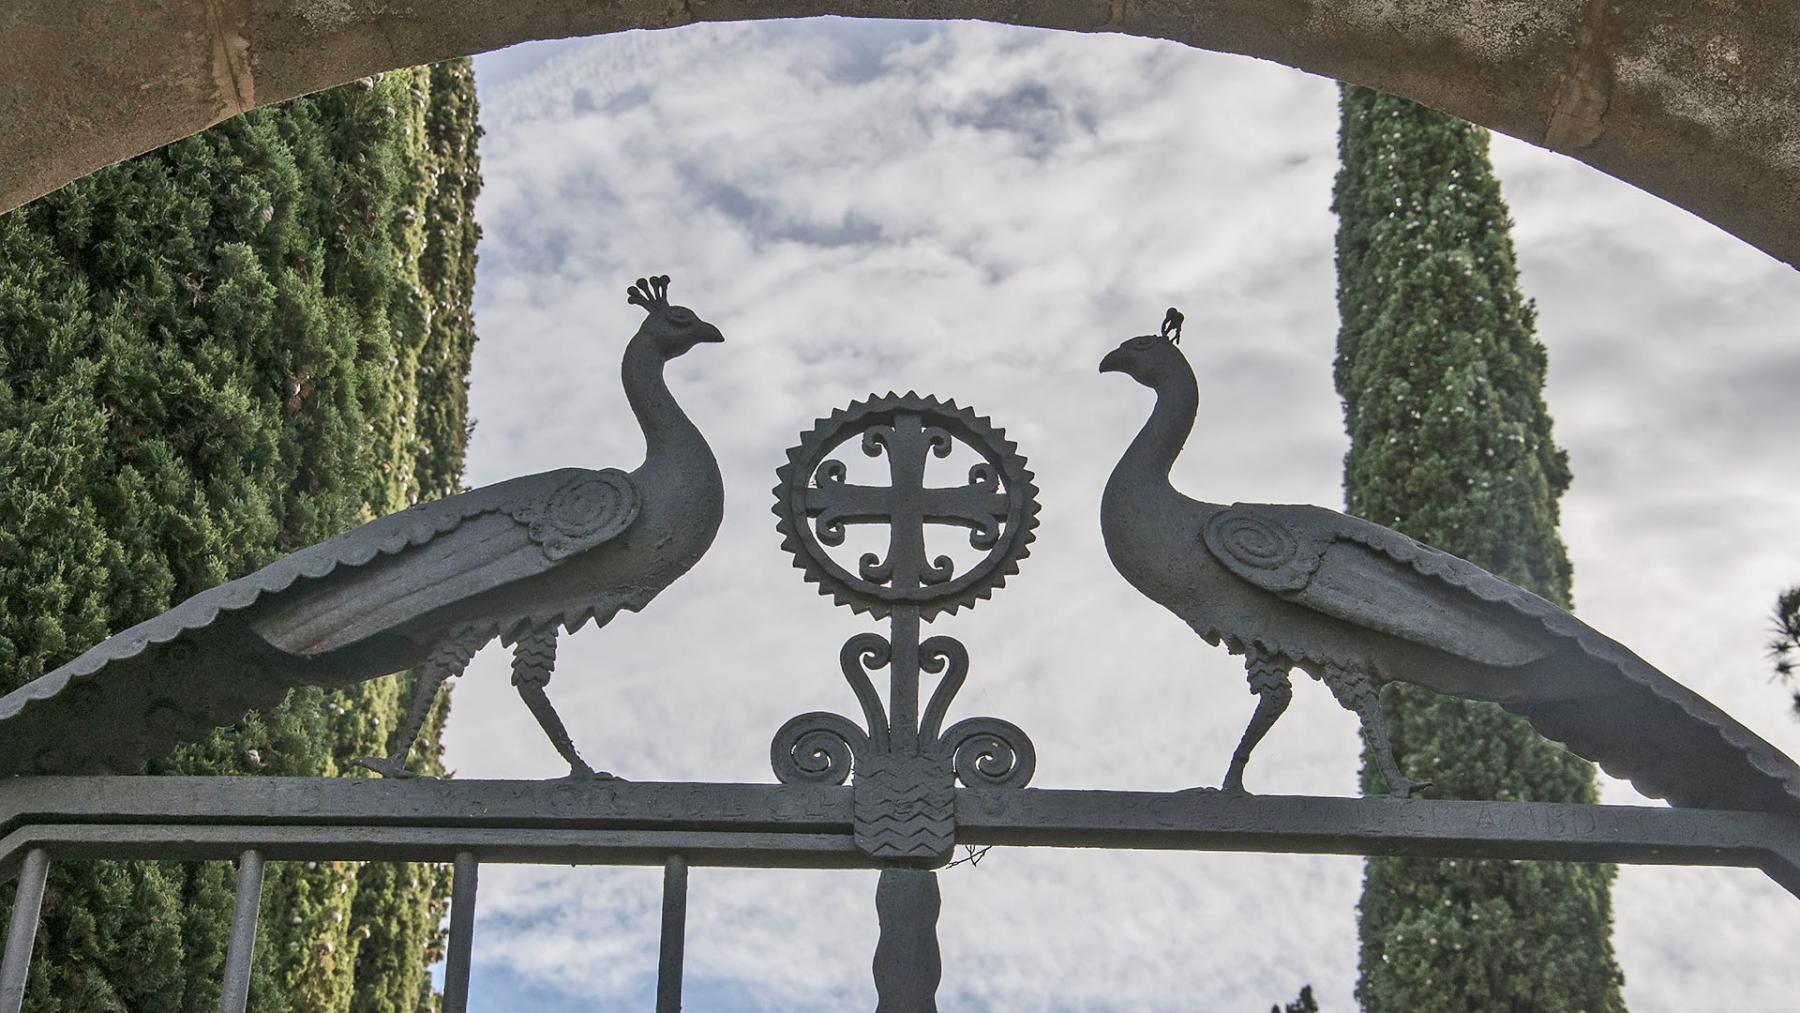 Dintel de la puerta de acceso al cementerio con un trabajo en forja que representan dos pavos reales azules, símbolo cristiano de la vida eterna